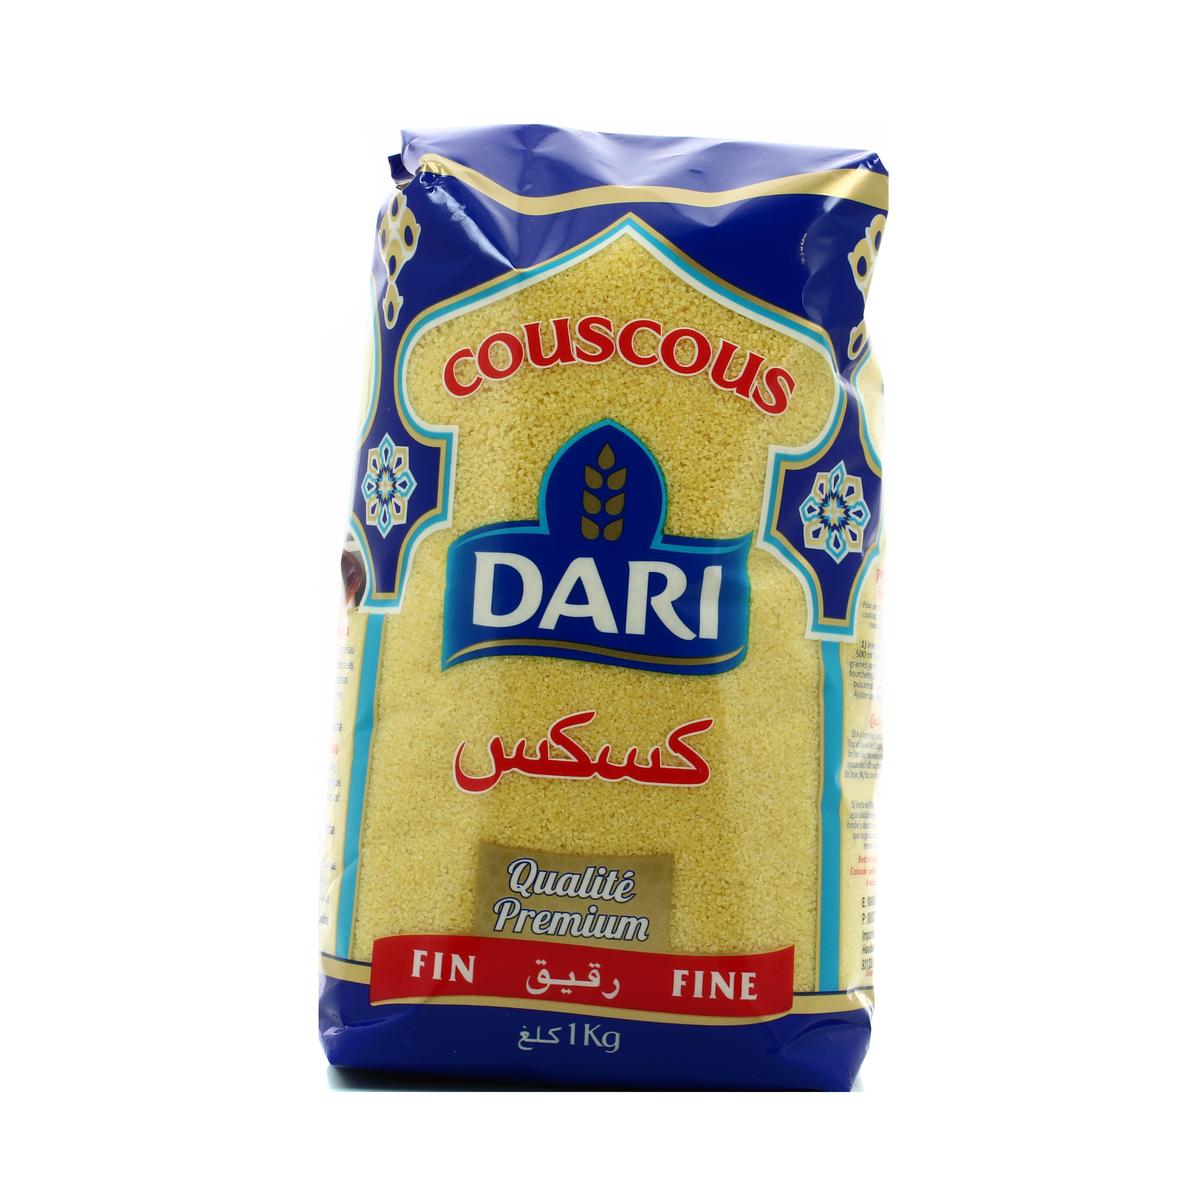 Semoule de blé Durum, Épicerie Halal, Commande en ligne